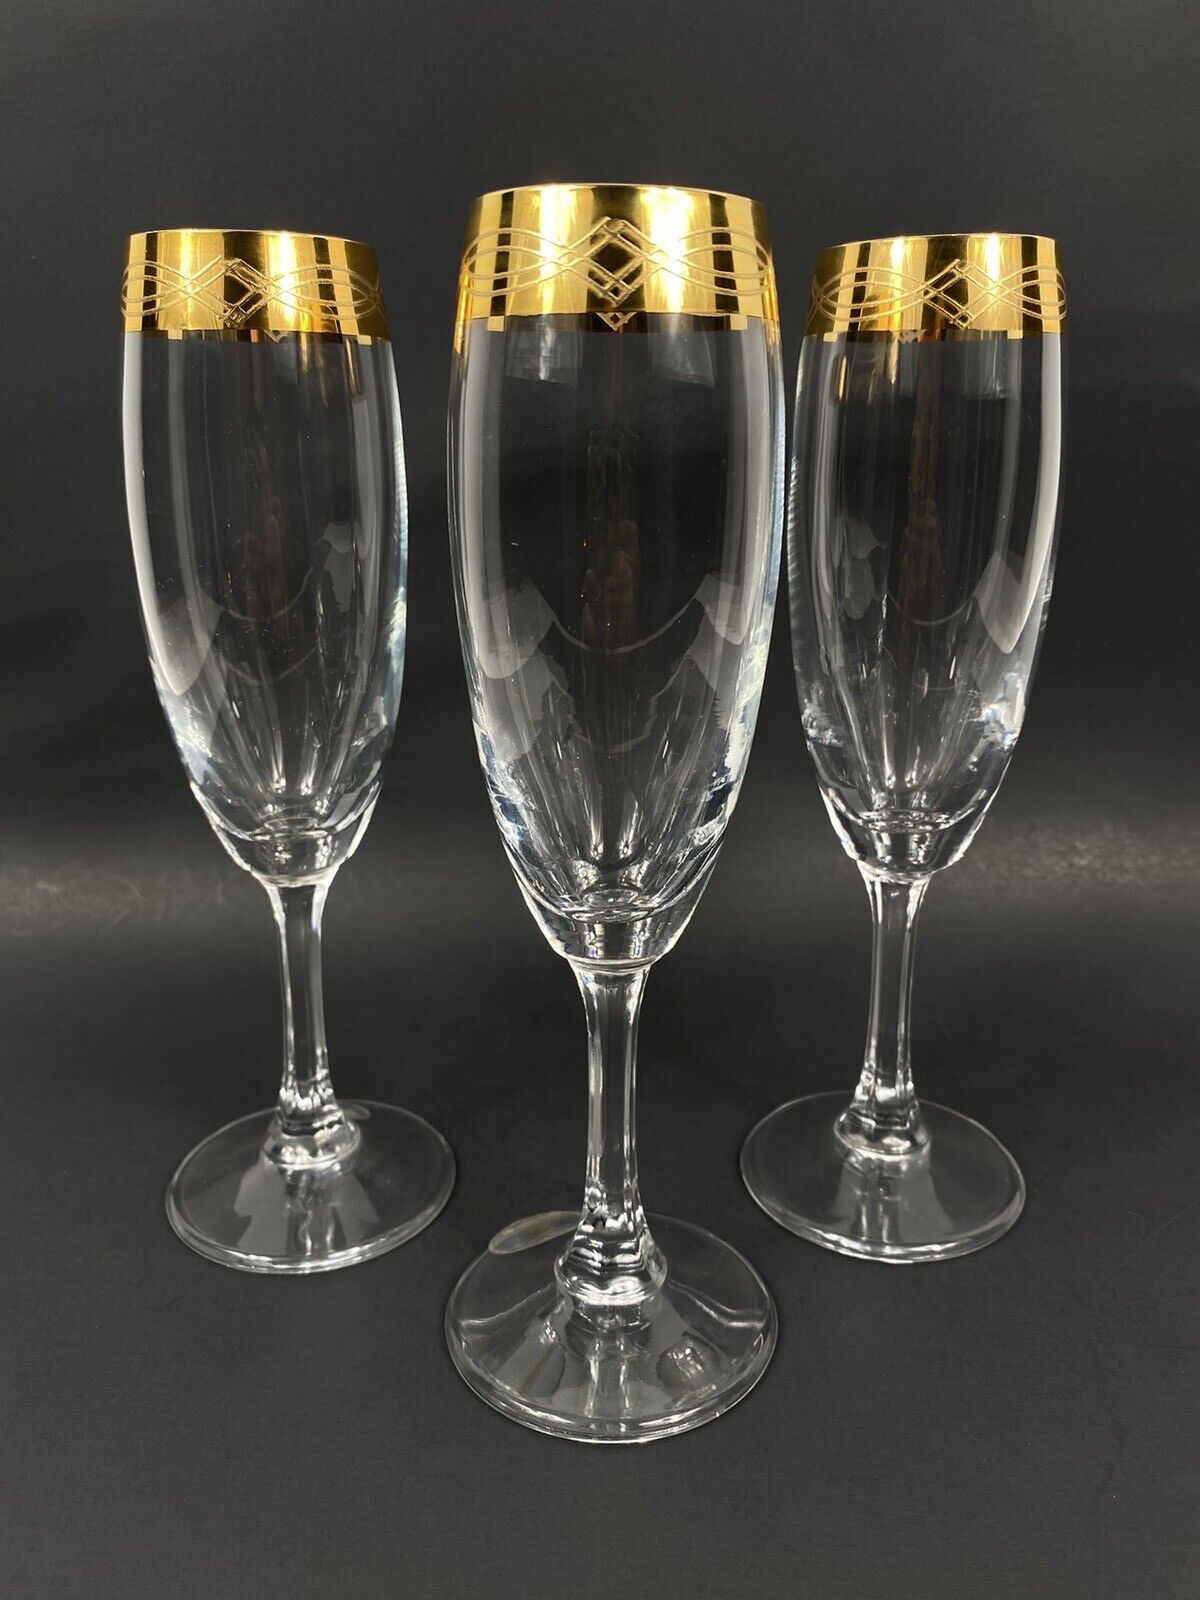 3 VTG T. Preziosi Lavorato and Mano Champagne Glasses Flutes w/24K Gold Rim NEW